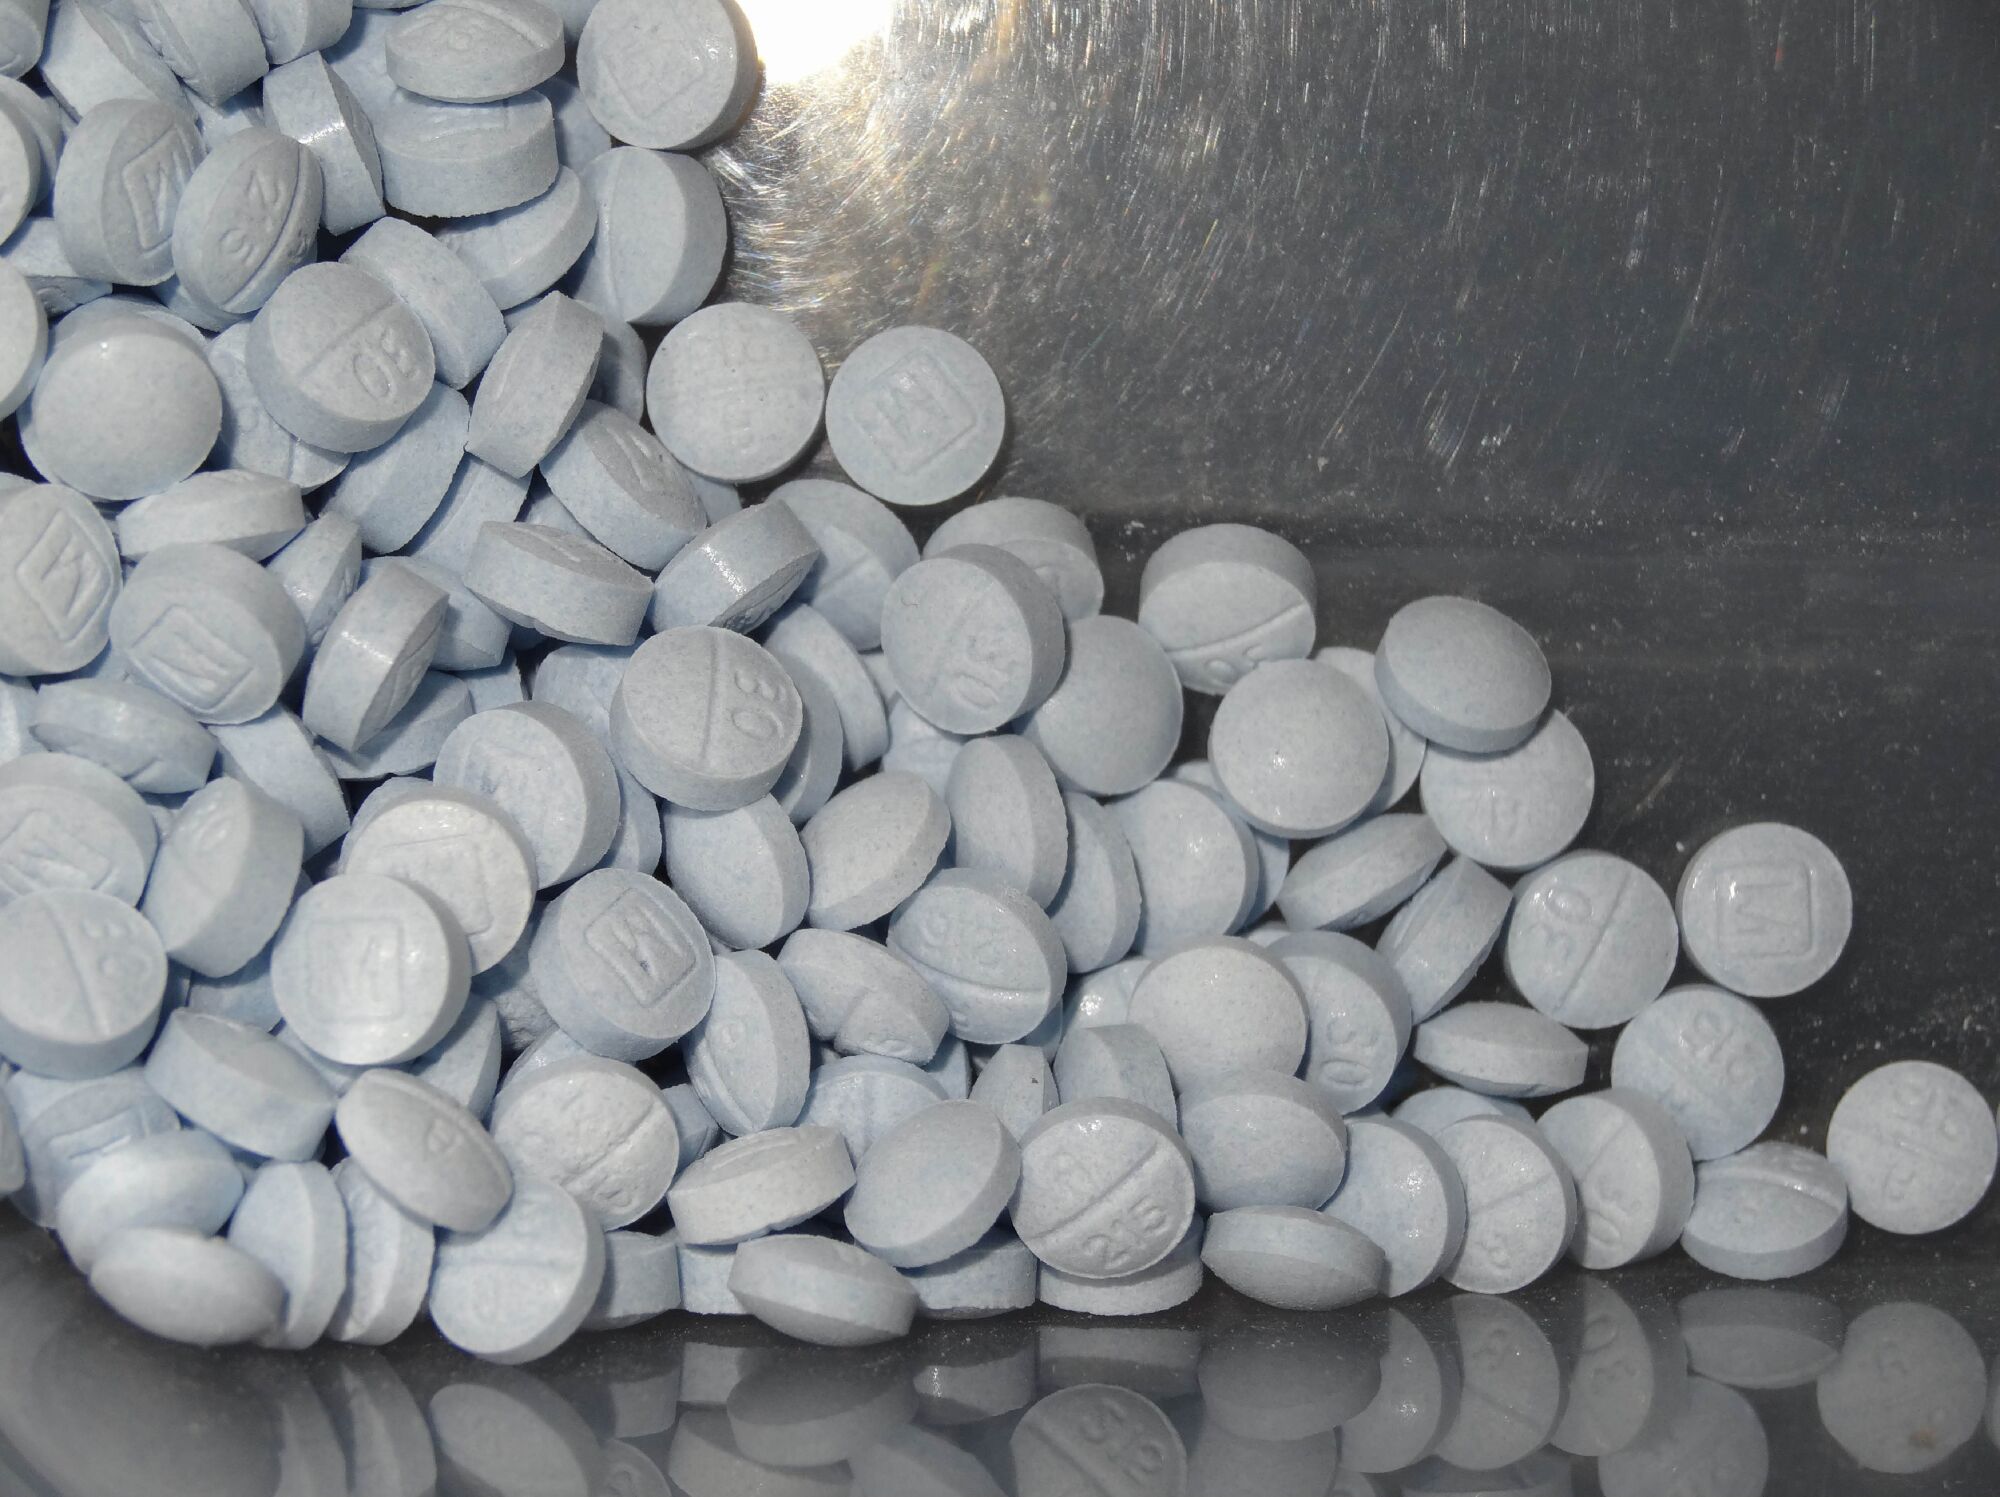 Light blue pills.